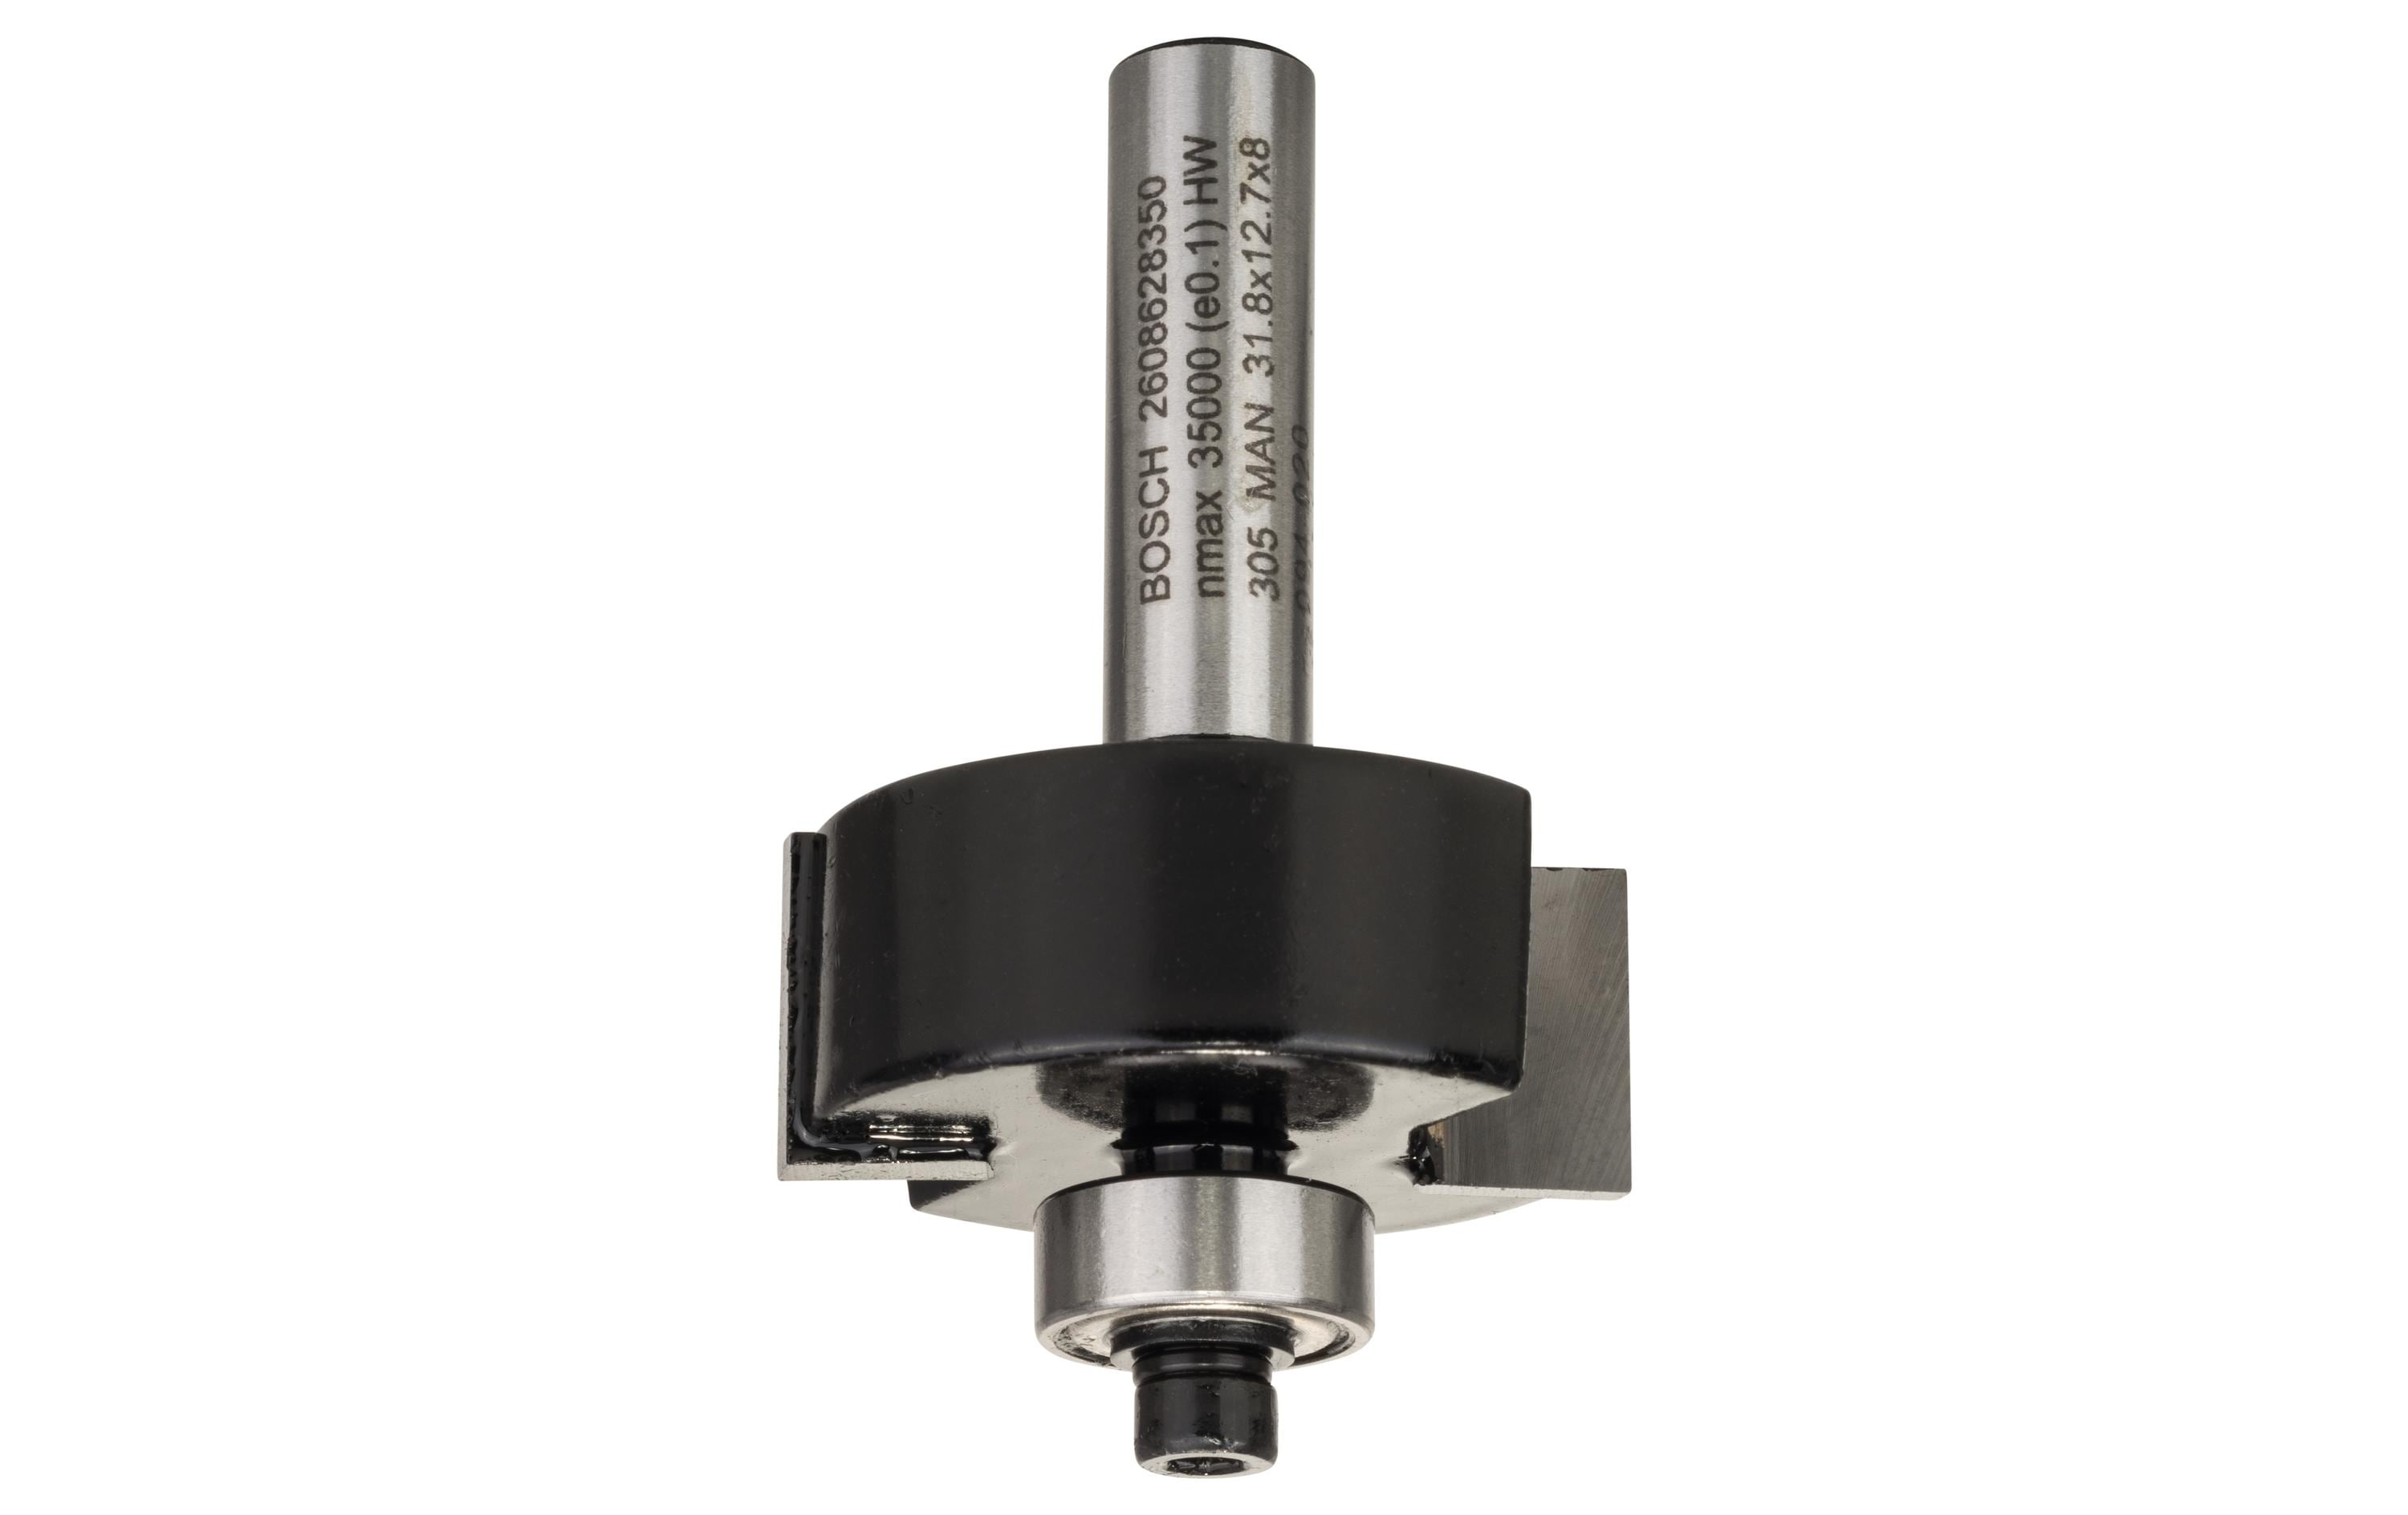 Bosch Professional Fasenfräser B: 9.5 mm, D: 31.8 mm, L: 12.5 mm